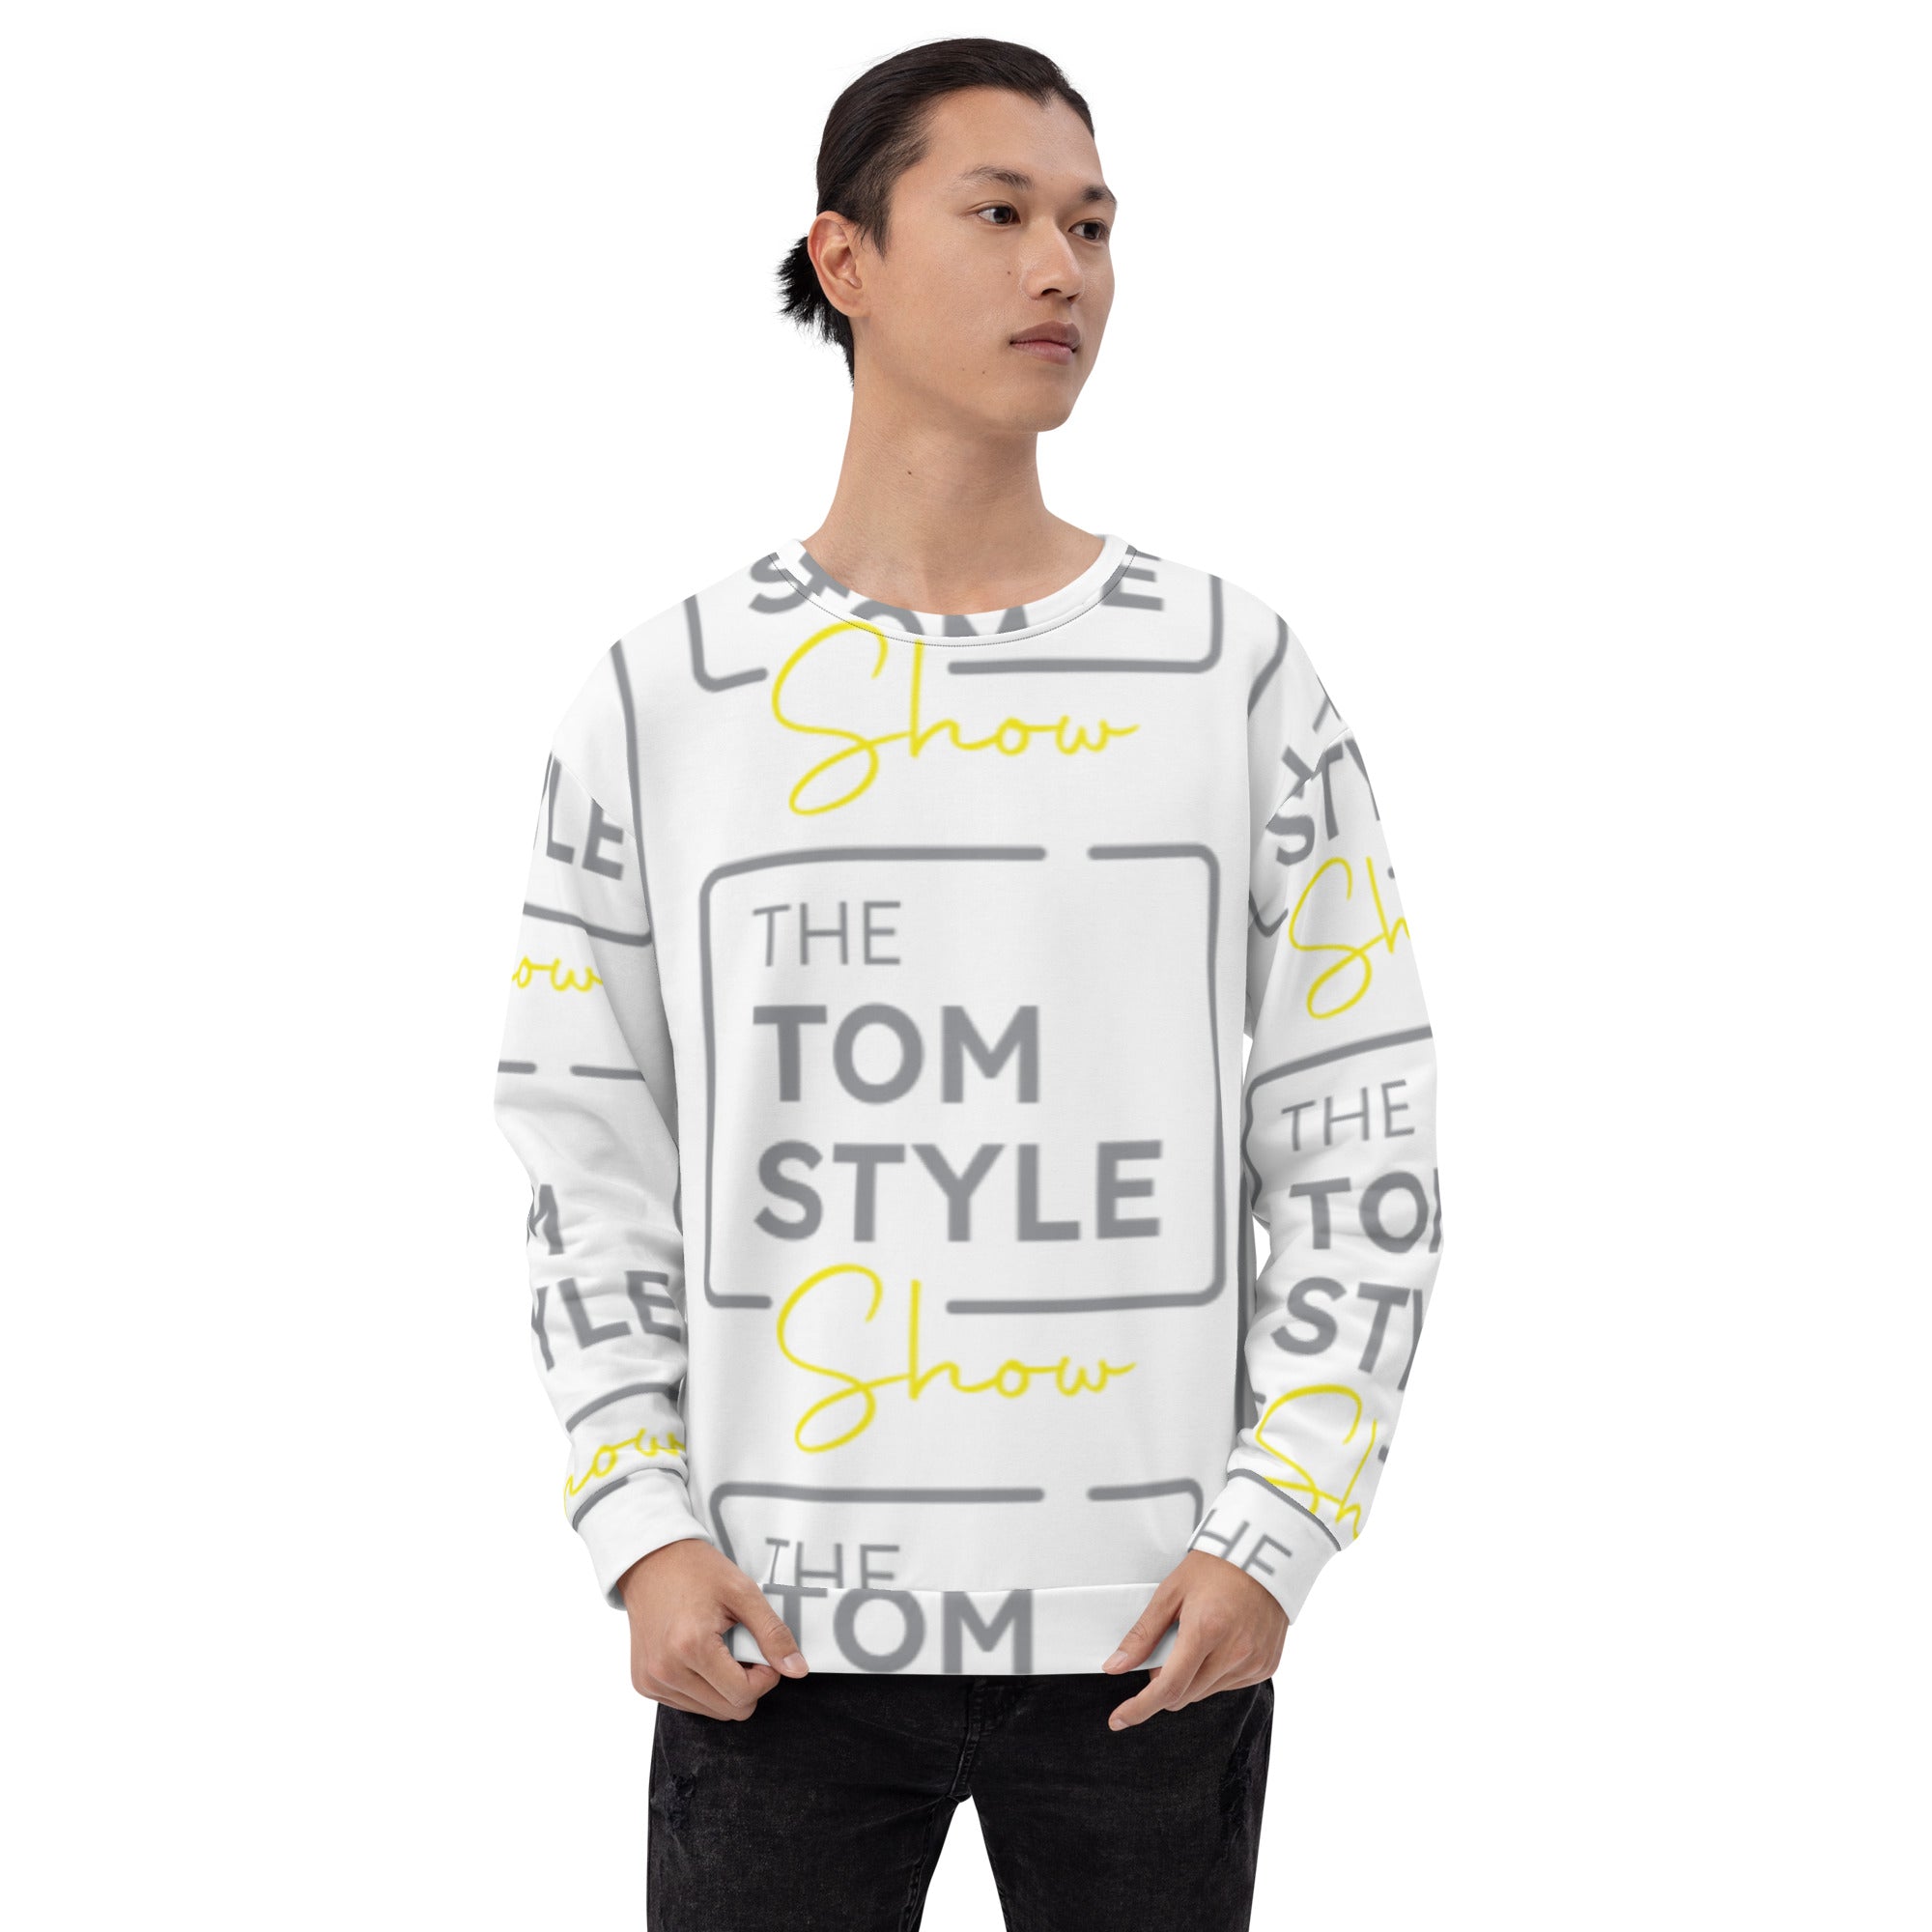 Men's Sweatshirt - Tom Style Show